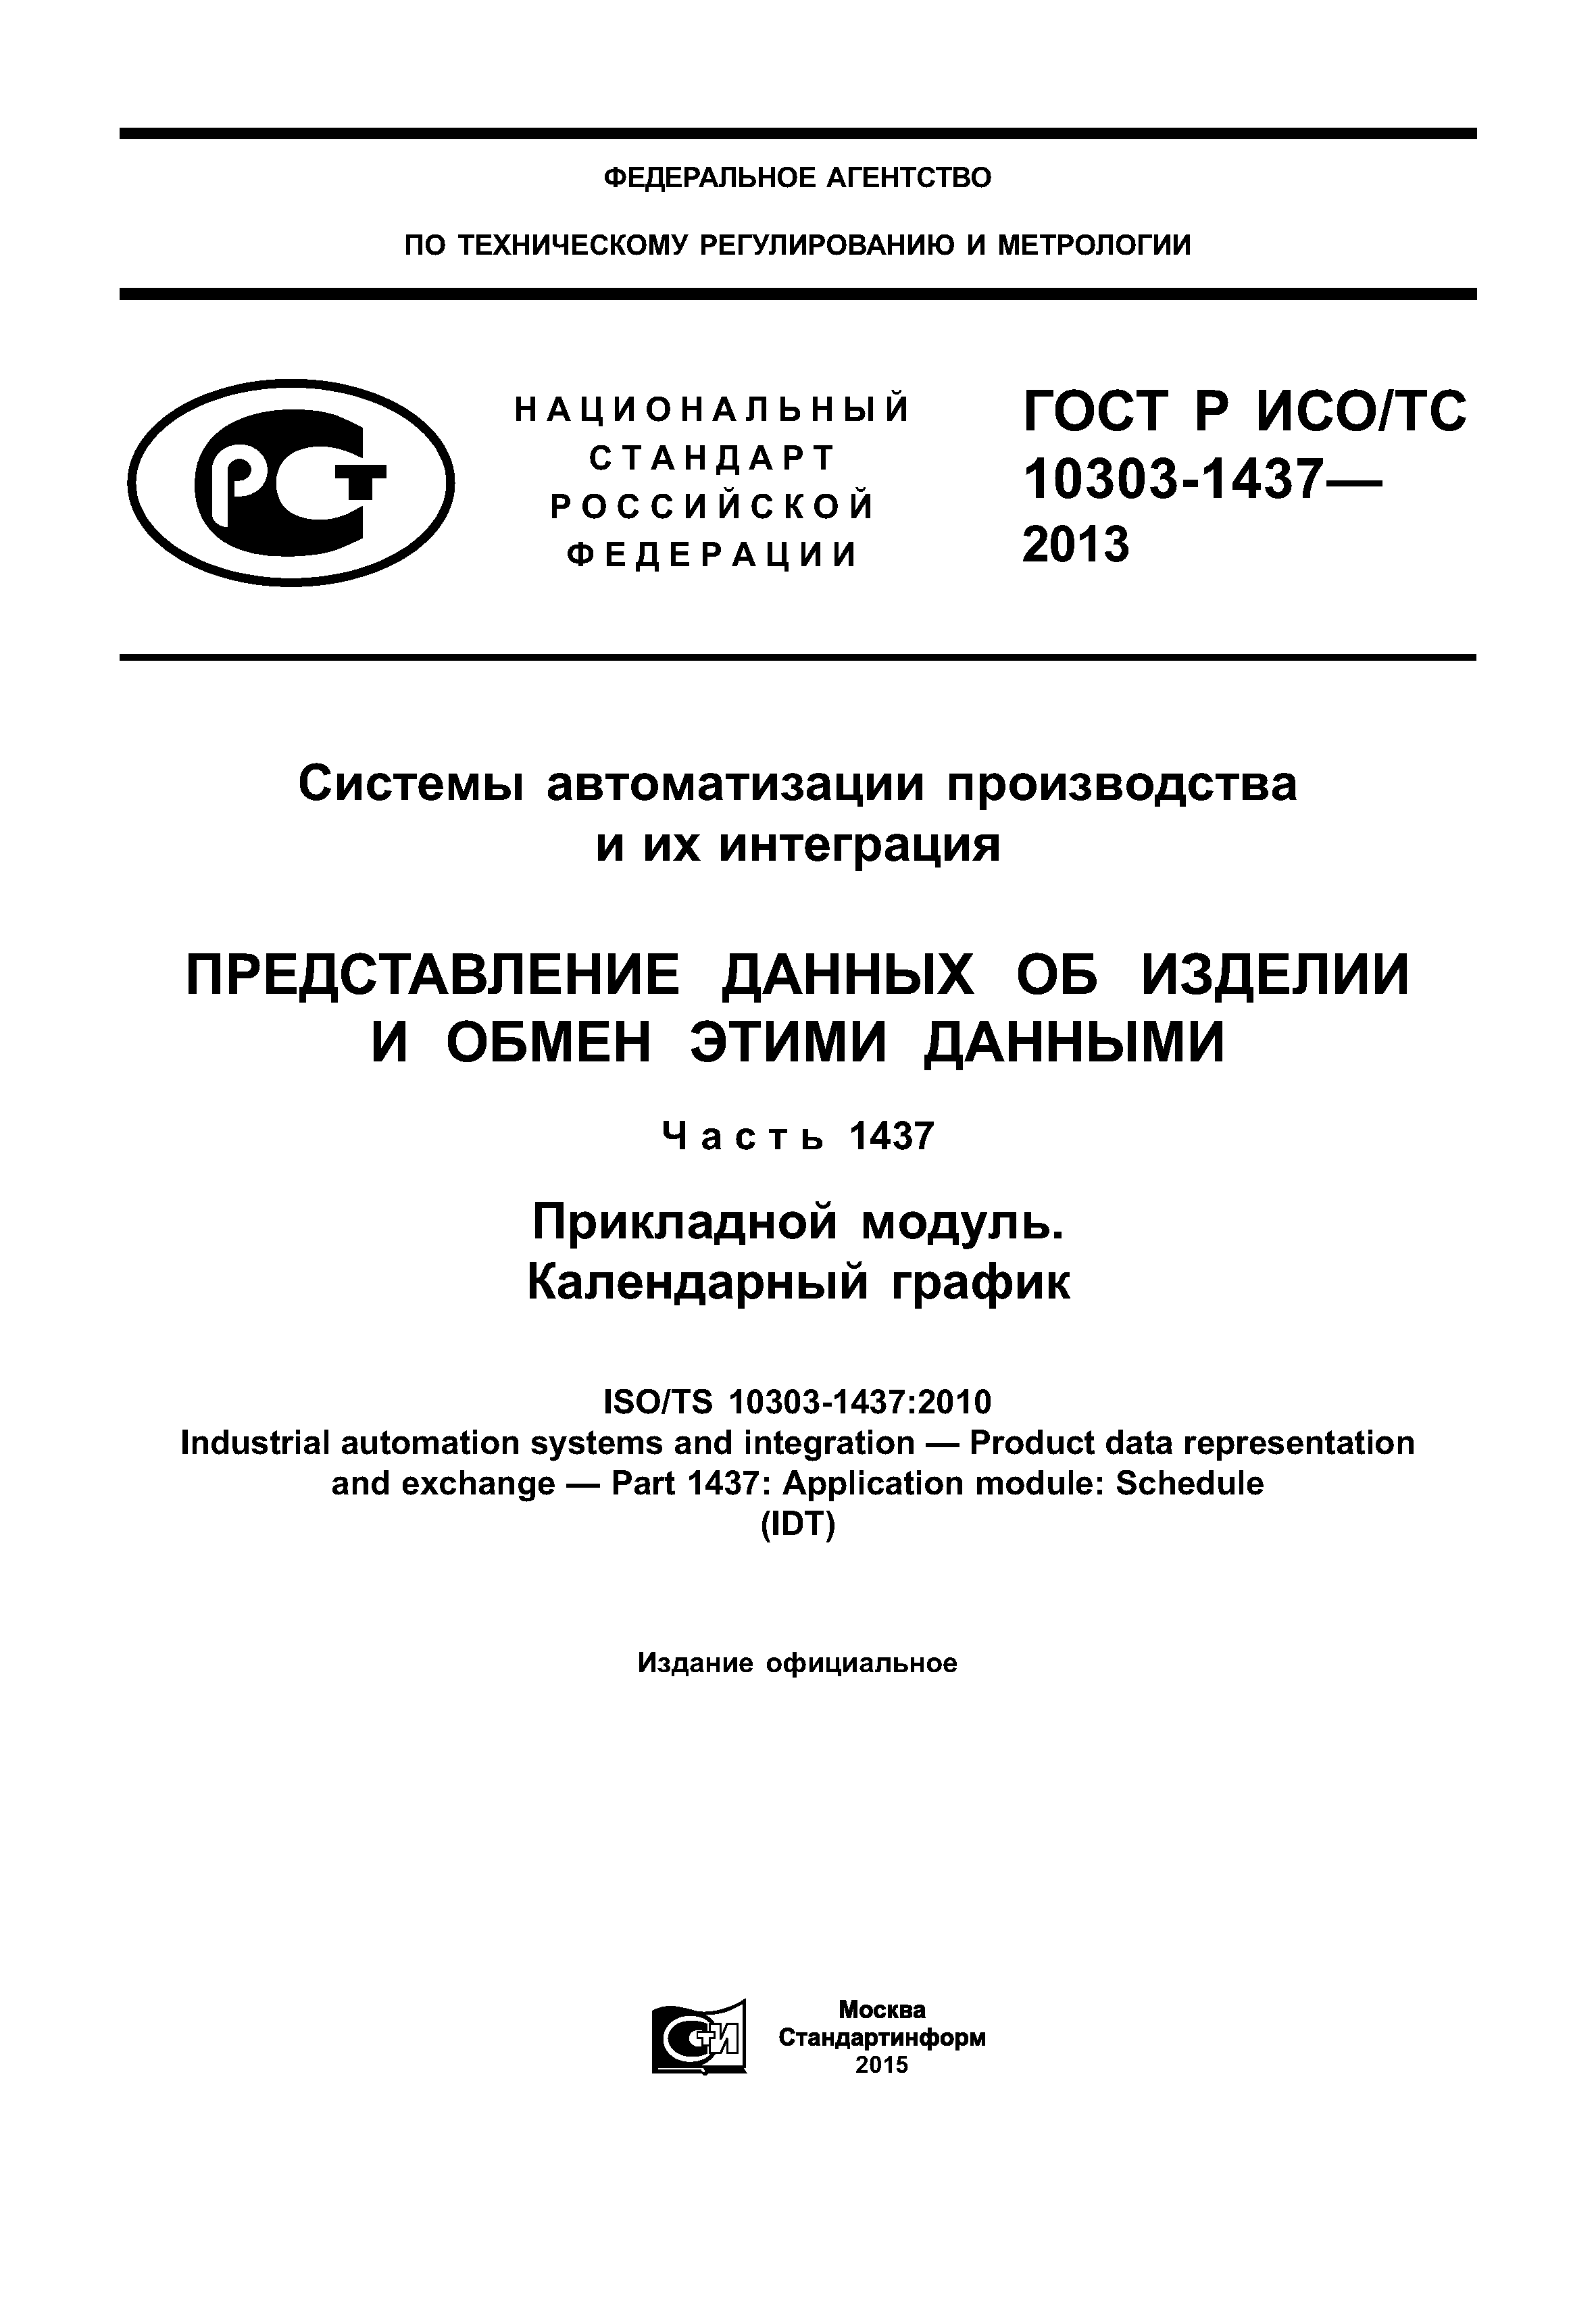 ГОСТ Р ИСО/ТС 10303-1437-2013